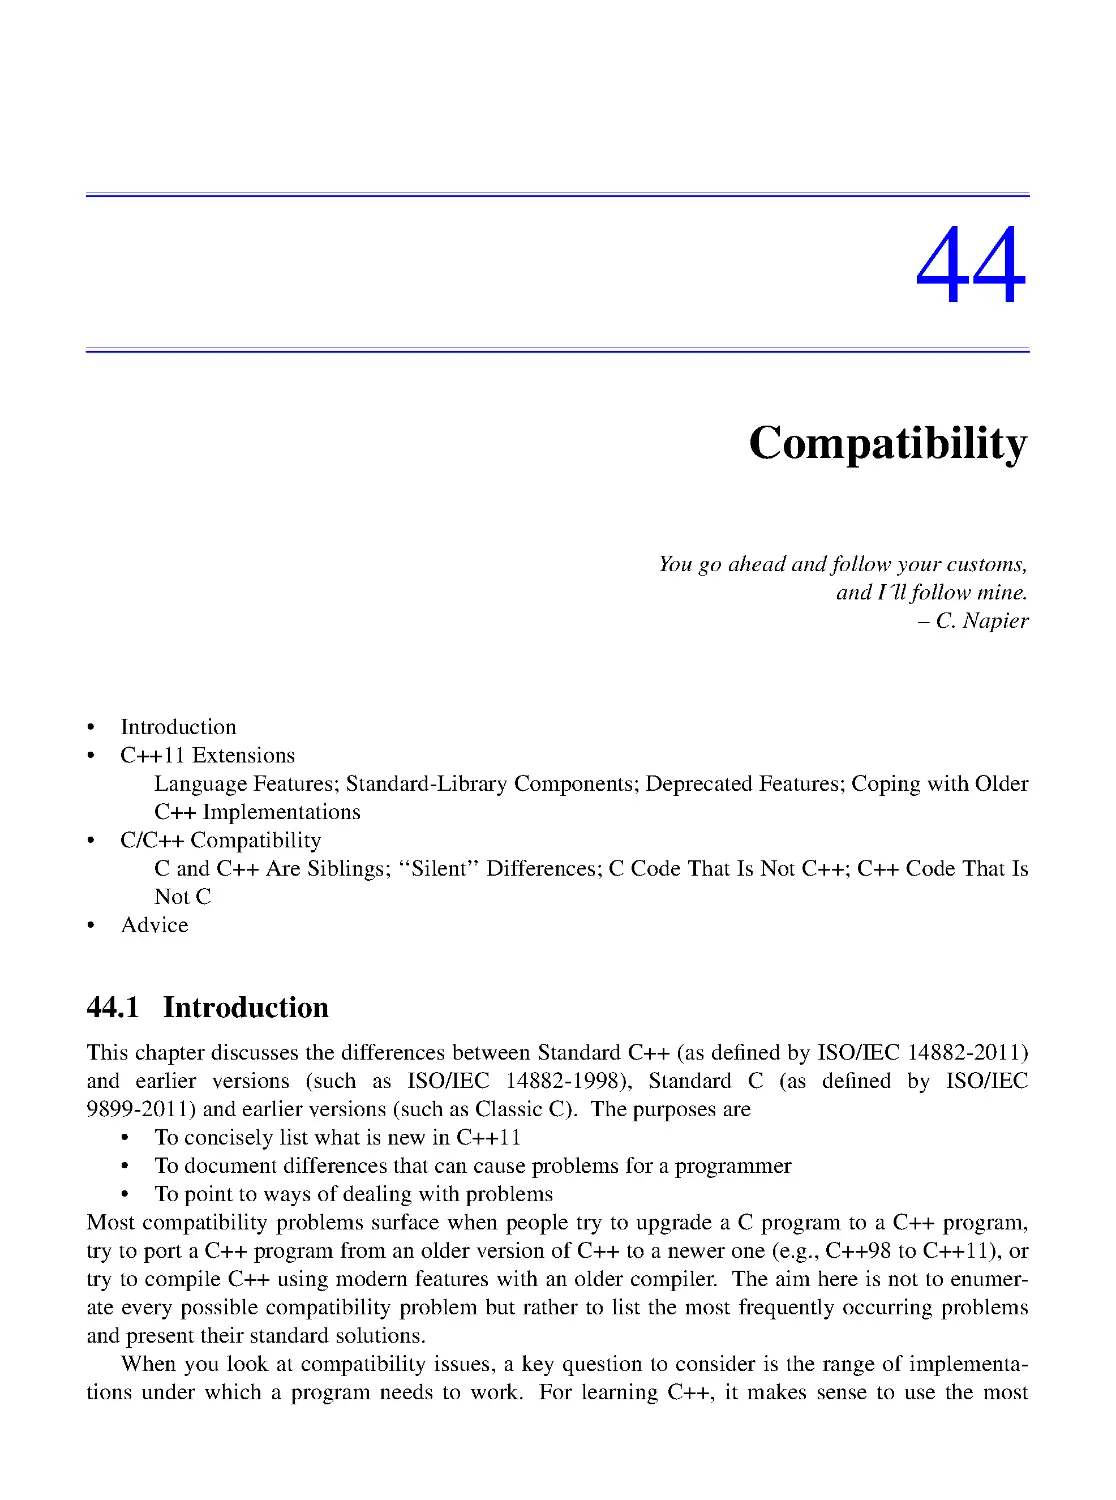 44. Compatibility